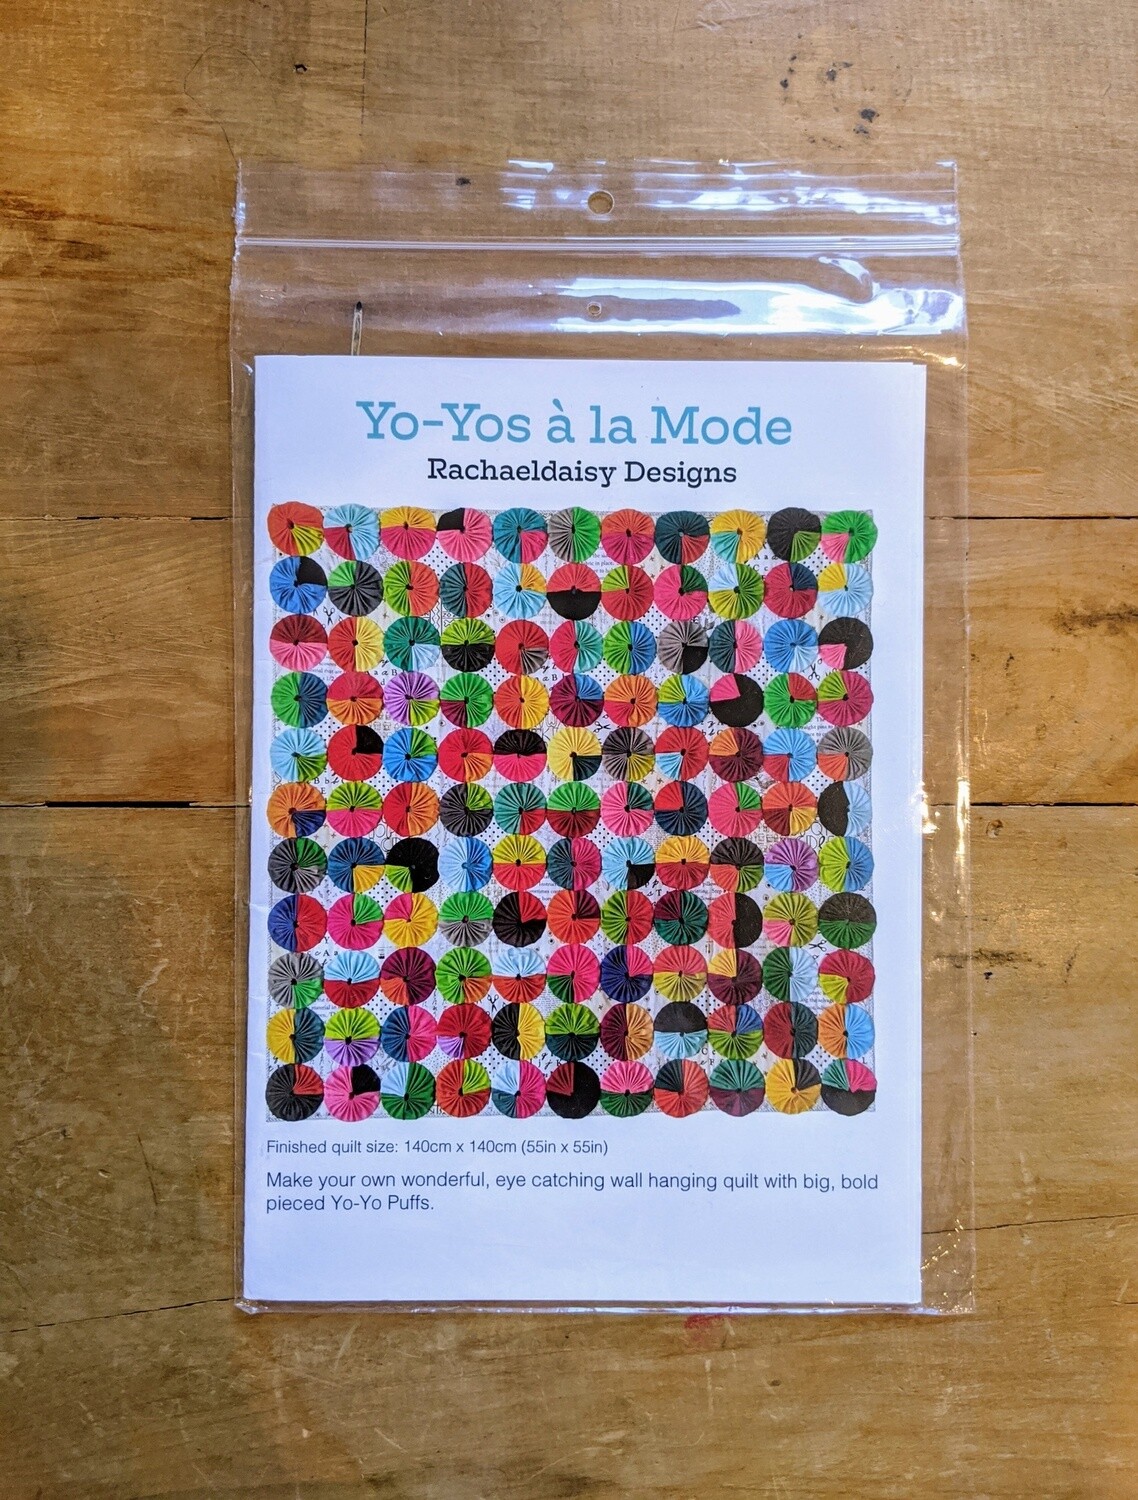 Yo-Yos a la Mode by Rachael Daisy